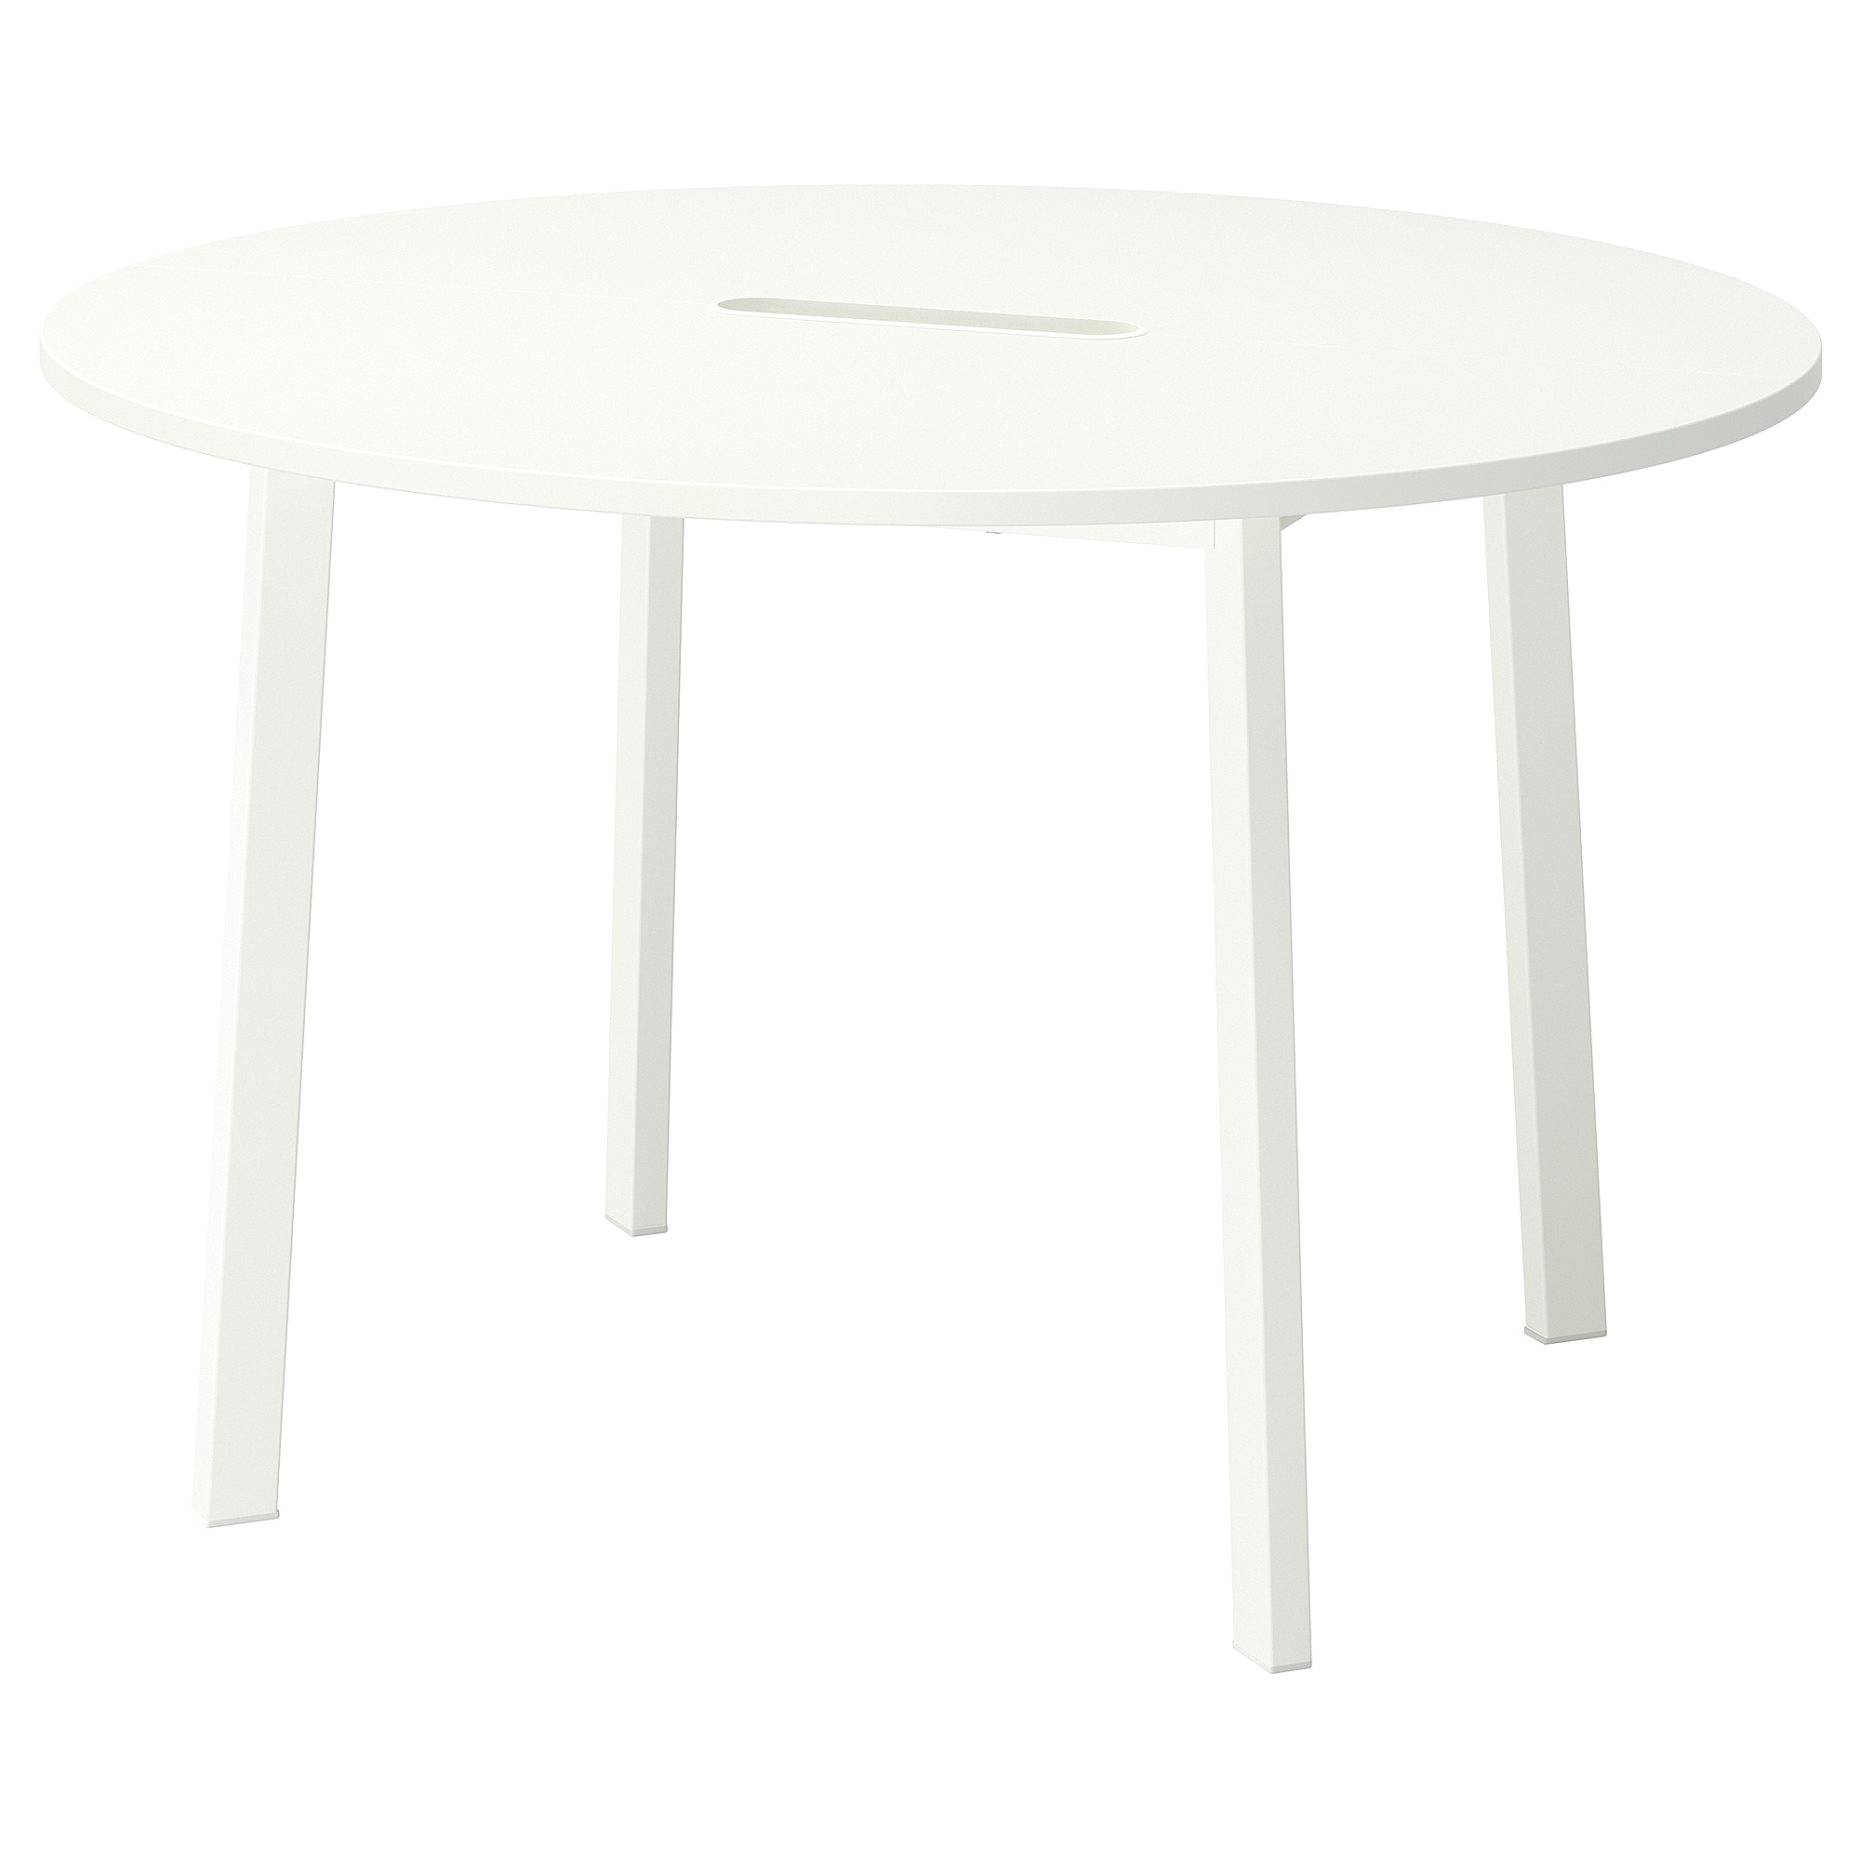 MITTZON, table top/round, 120 cm, 105.156.16